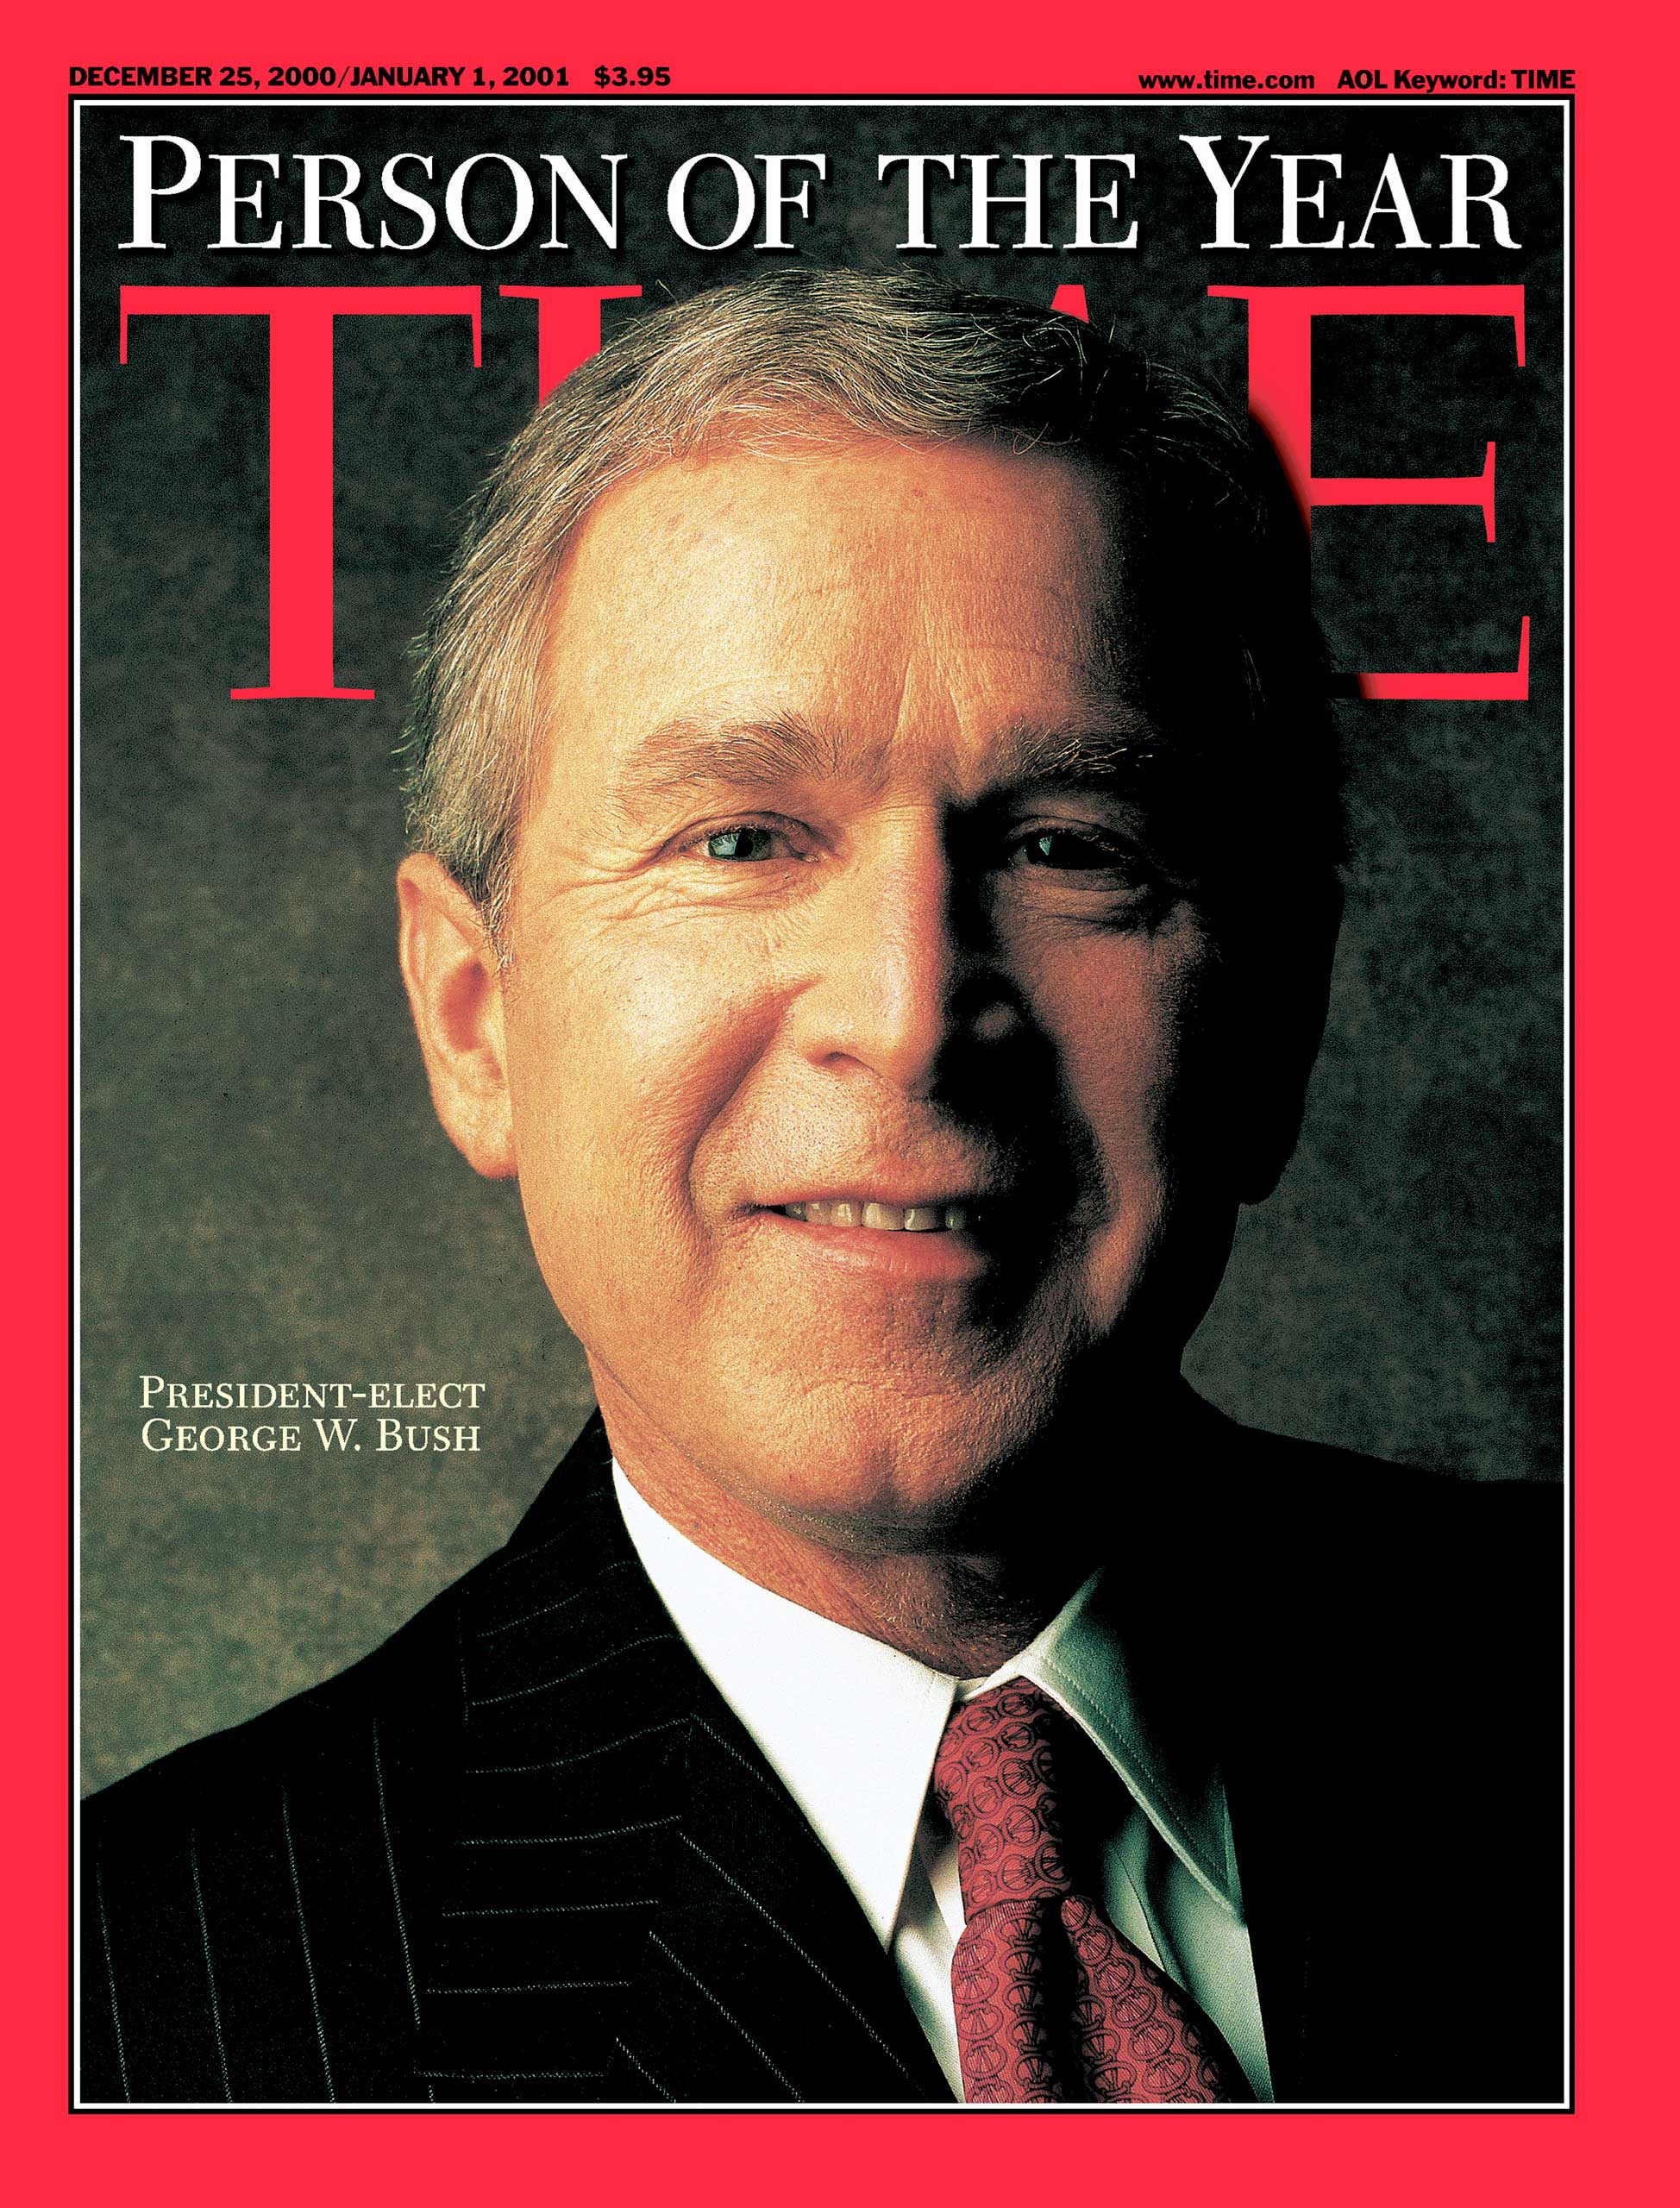 2000: President George W. Bush